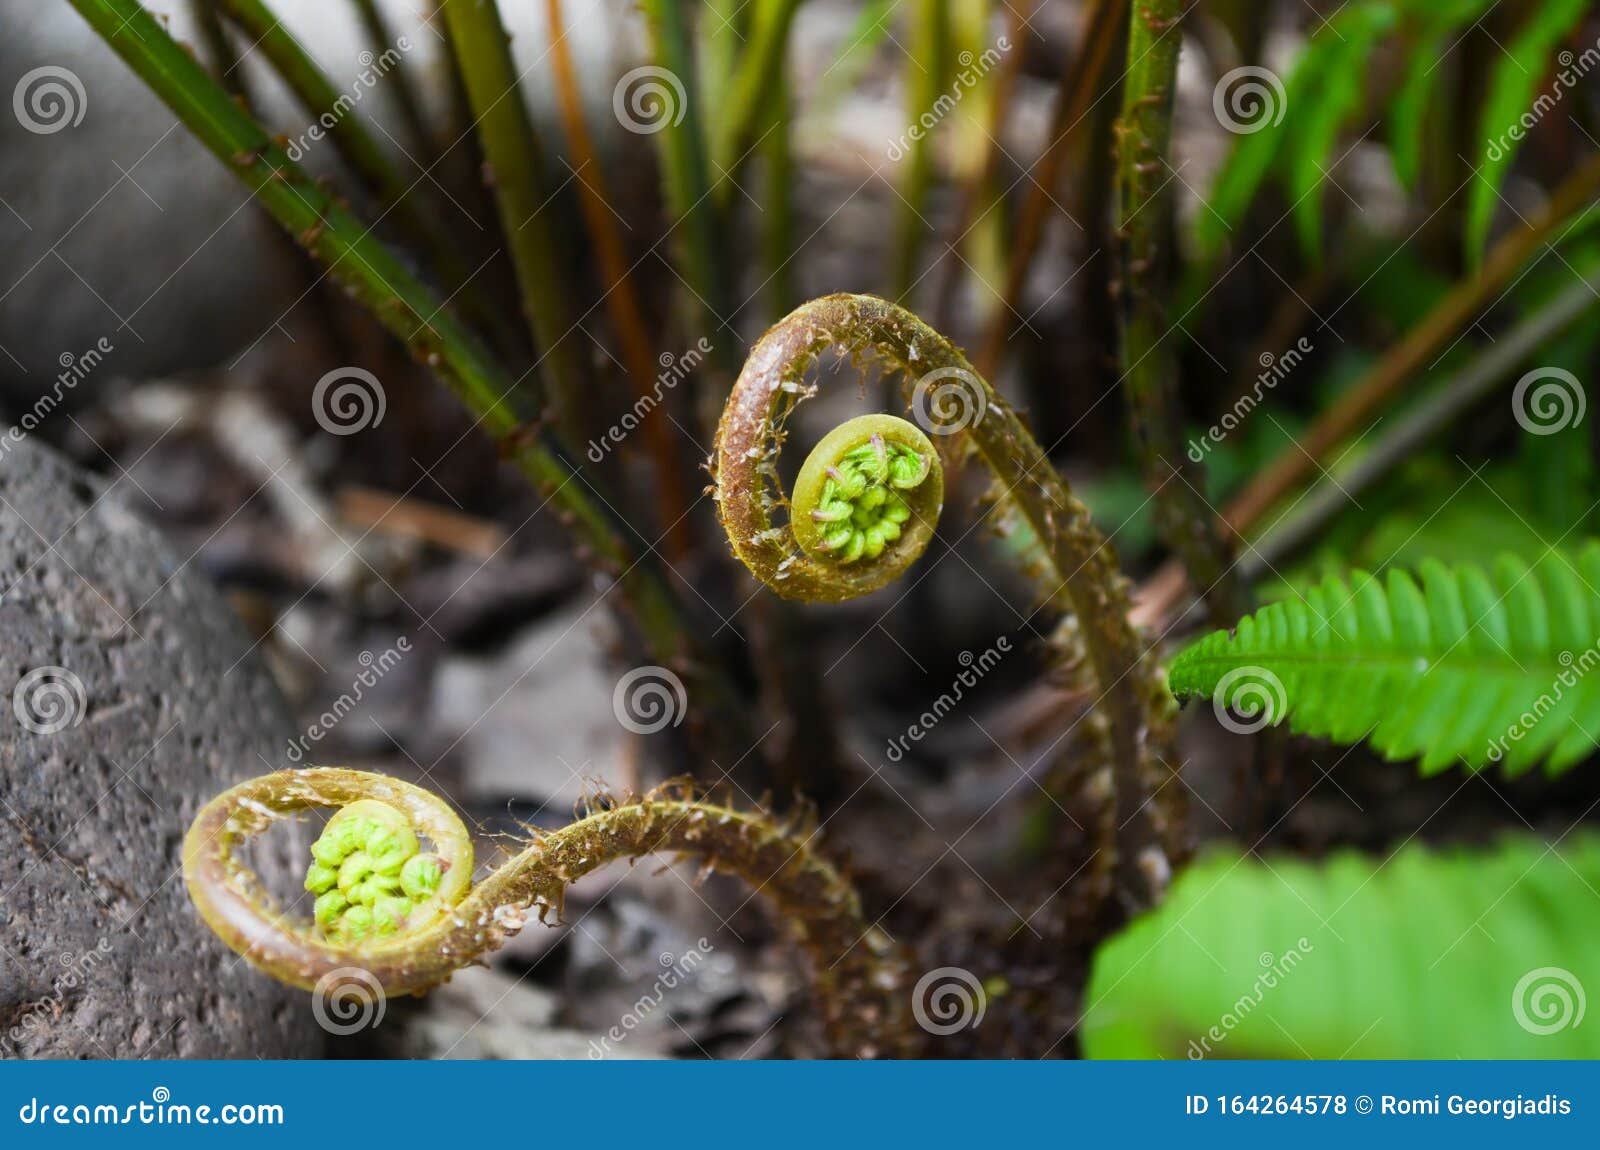 athyrium filix-femina or lady fern unrolling new leaves